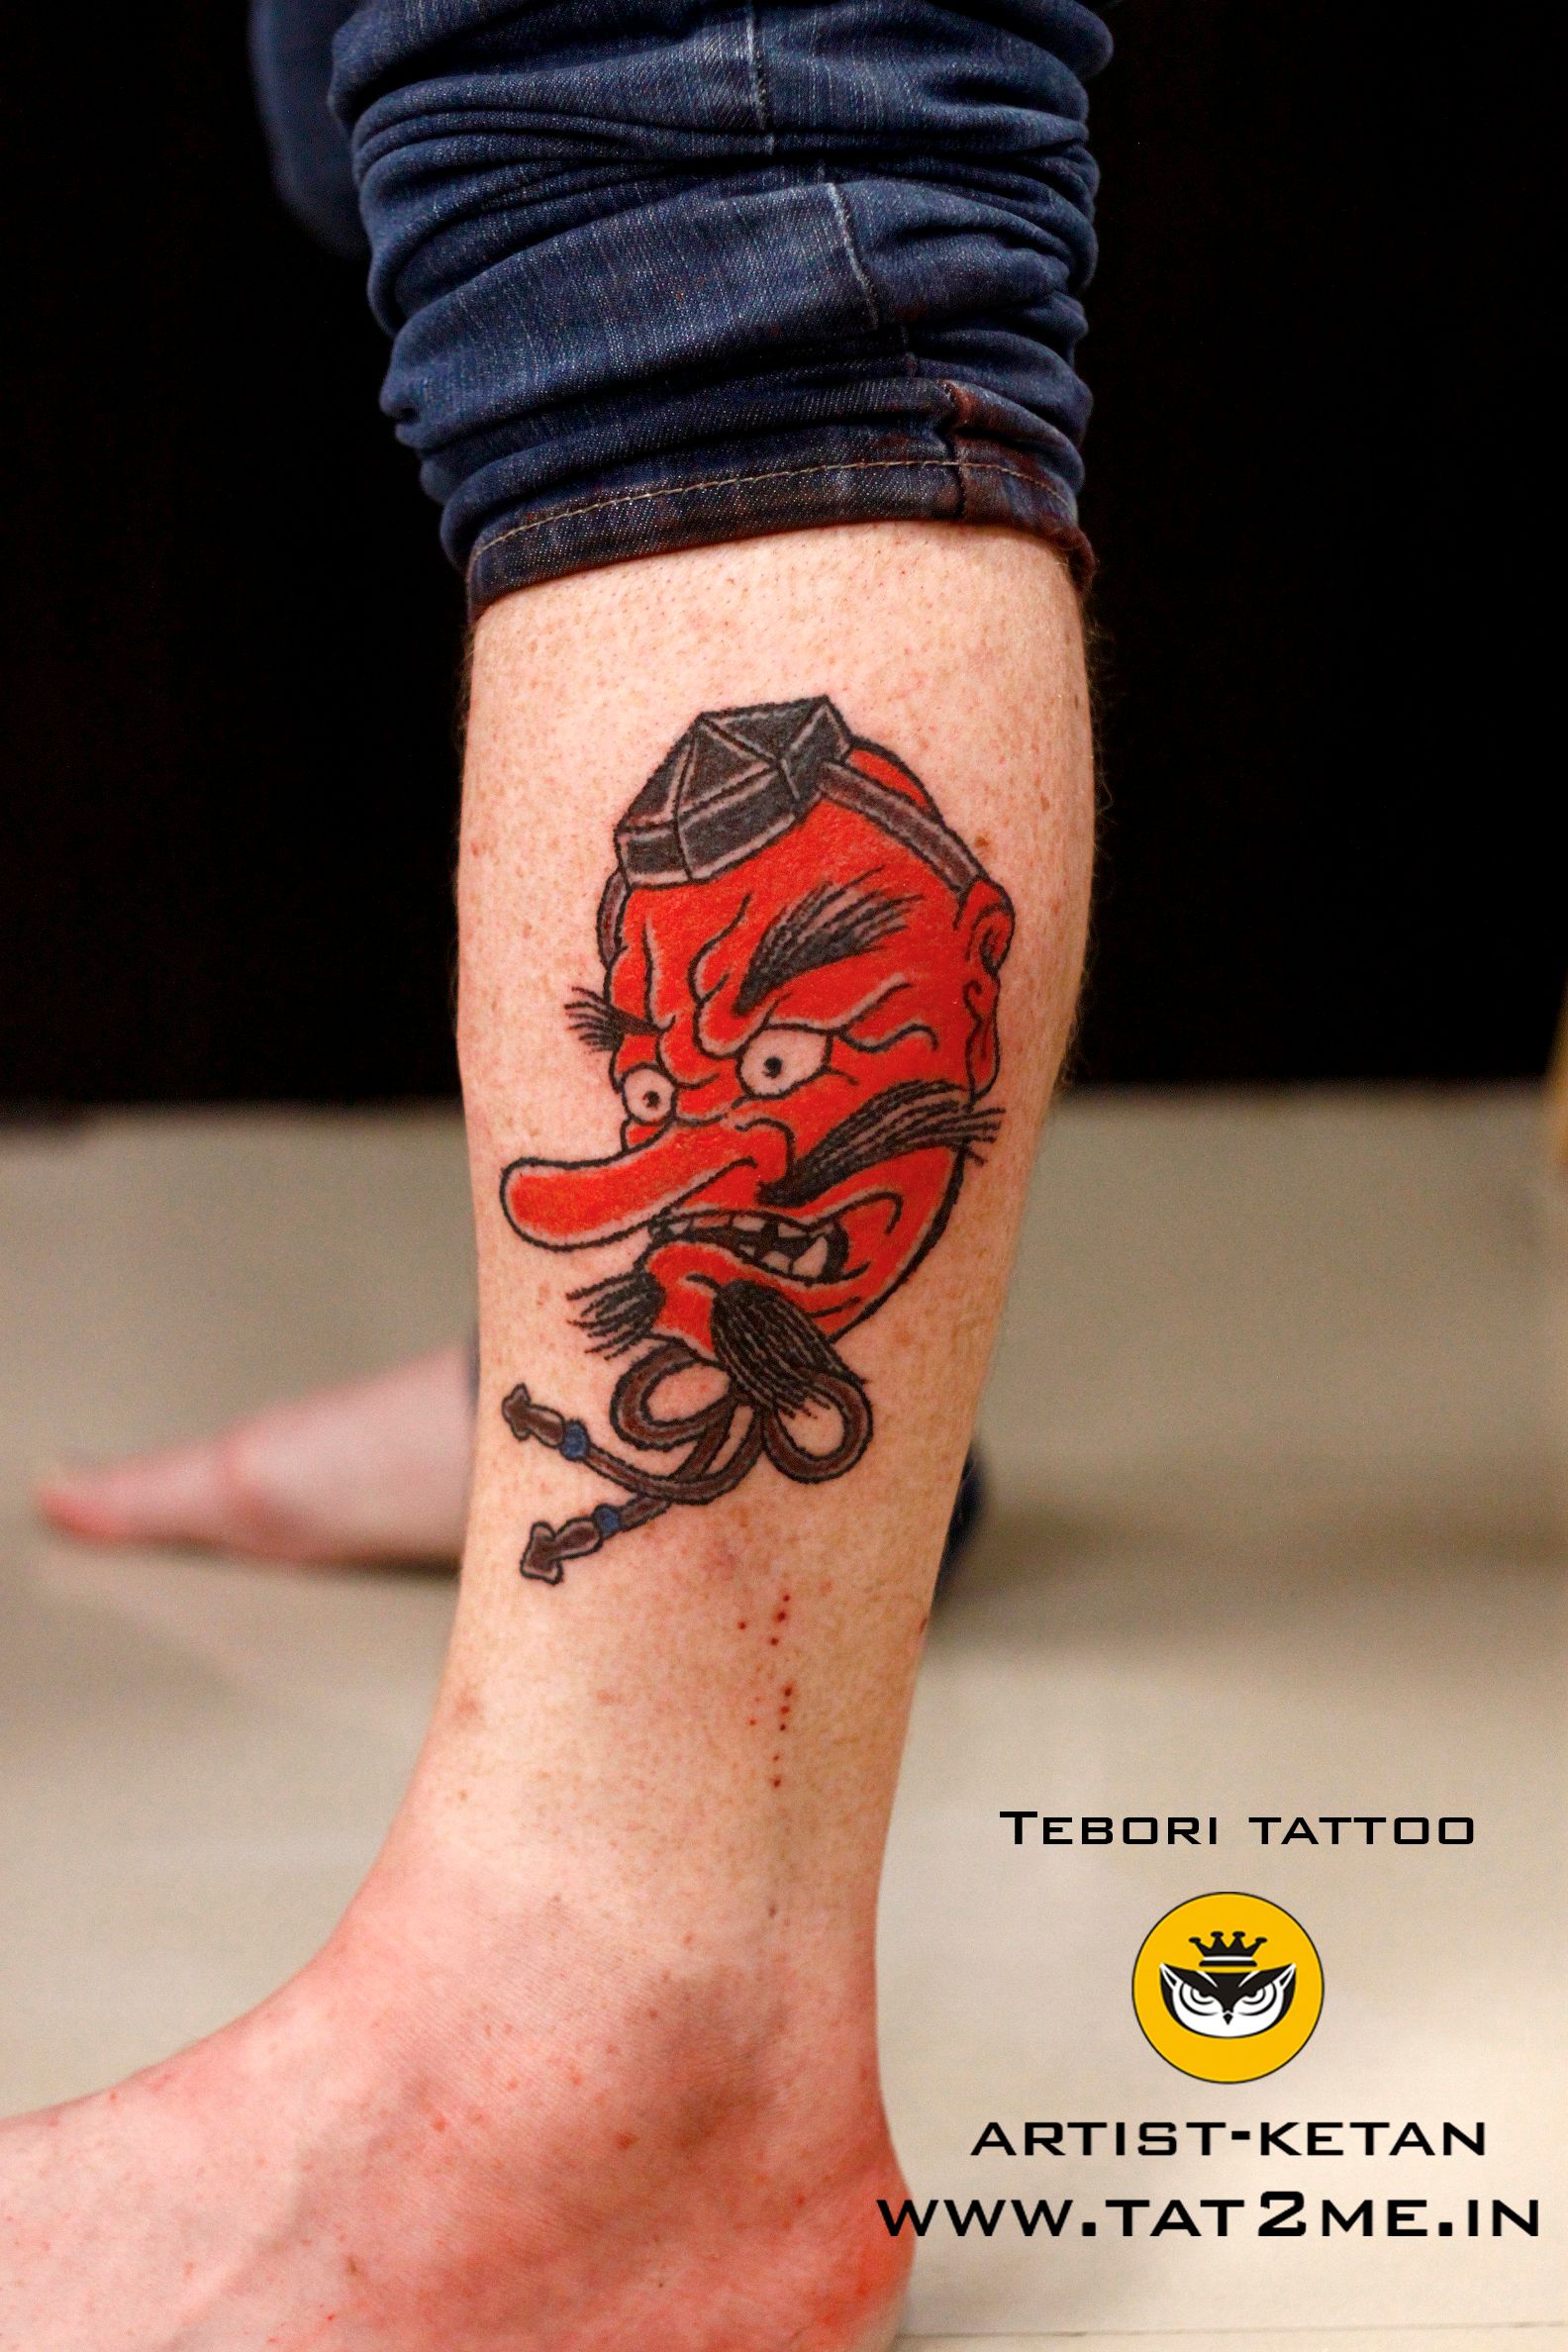 Tattoo uploaded by Ketan vaidya • tengu tattoo tebori tattoo • Tattoodo